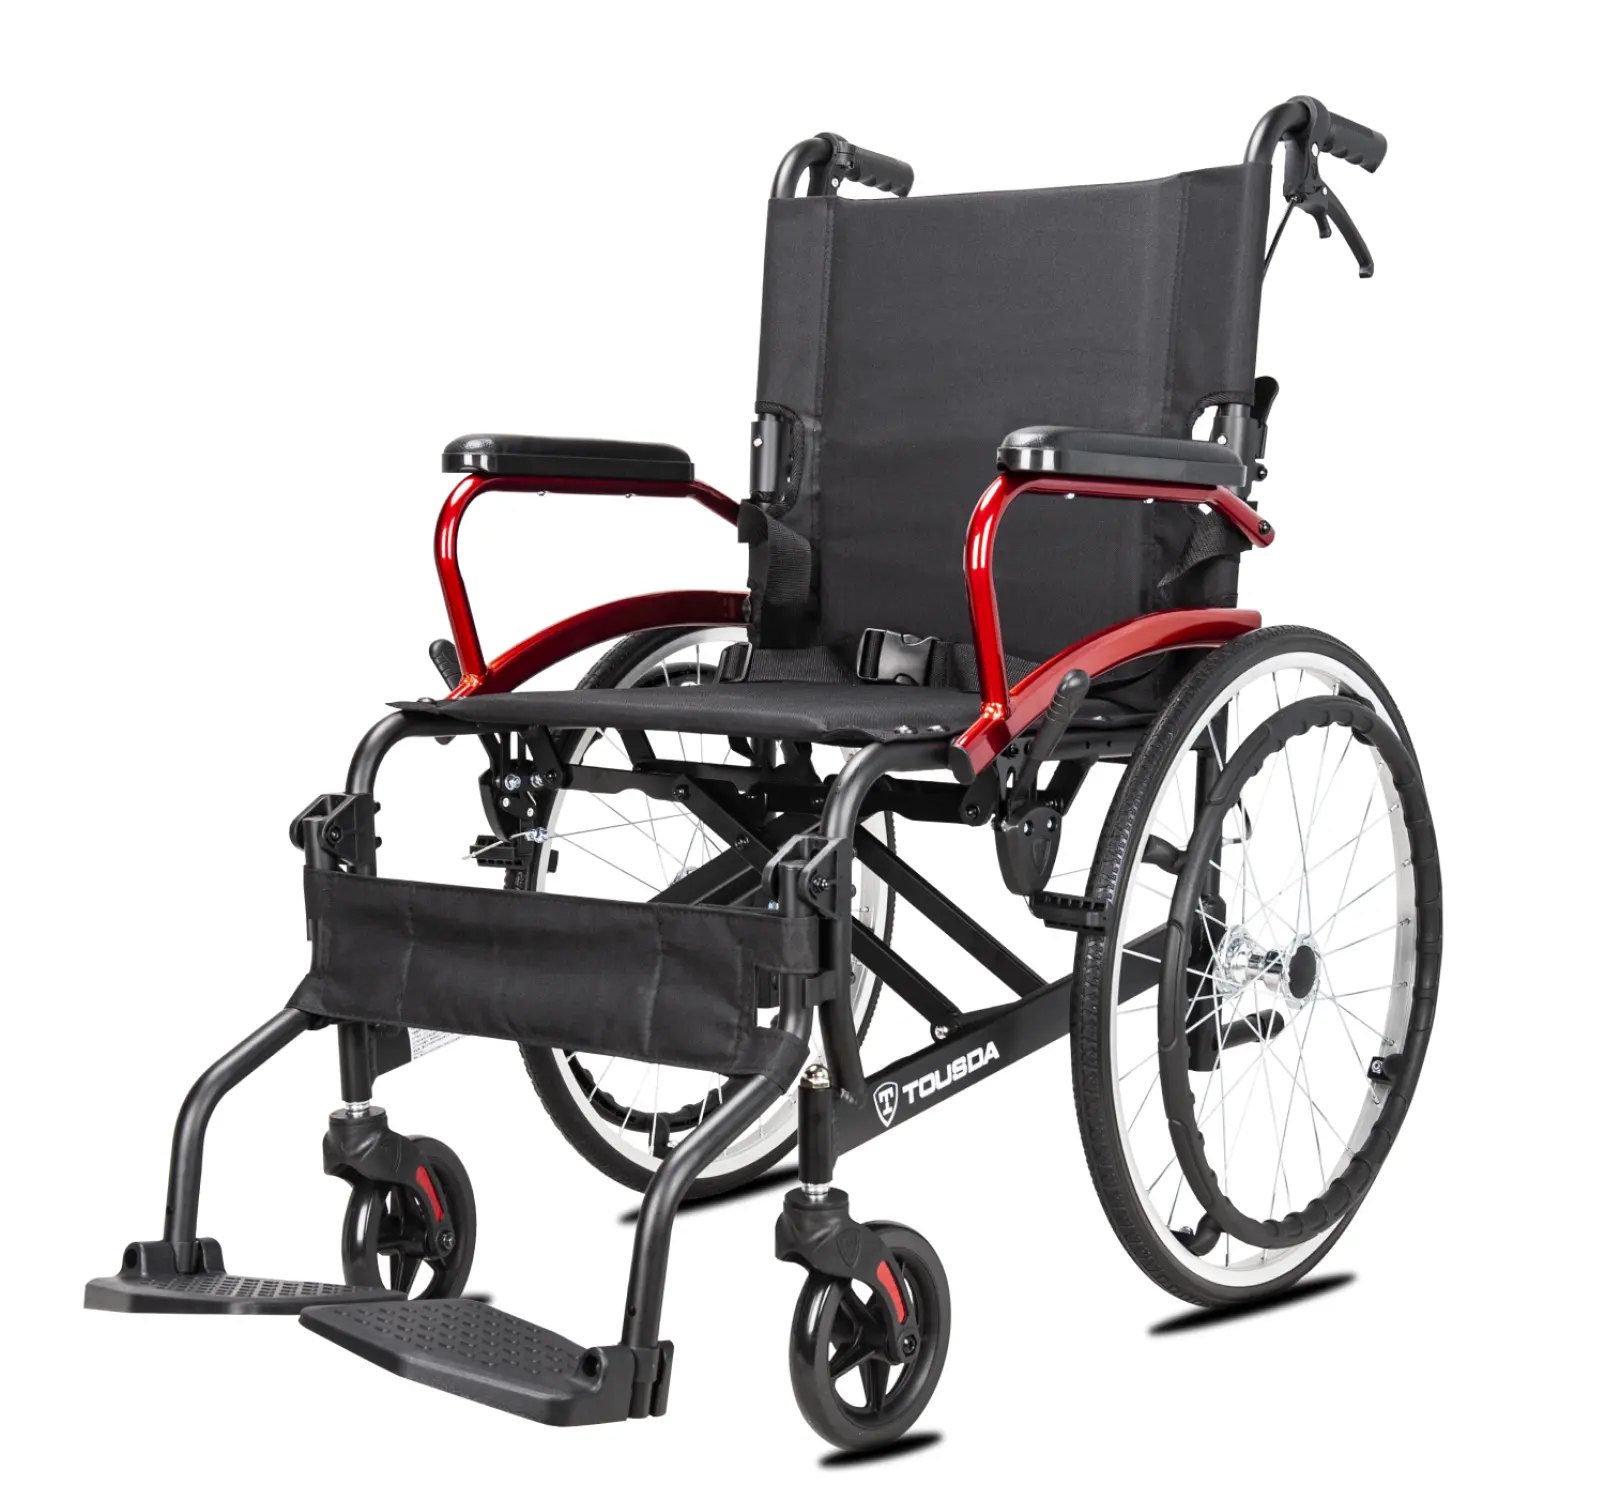 Originale fabbrica più recente sedia a rotelle manuale leggera portatile pieghevole a mano per adulti disabili per anziani utenti domestici esterni